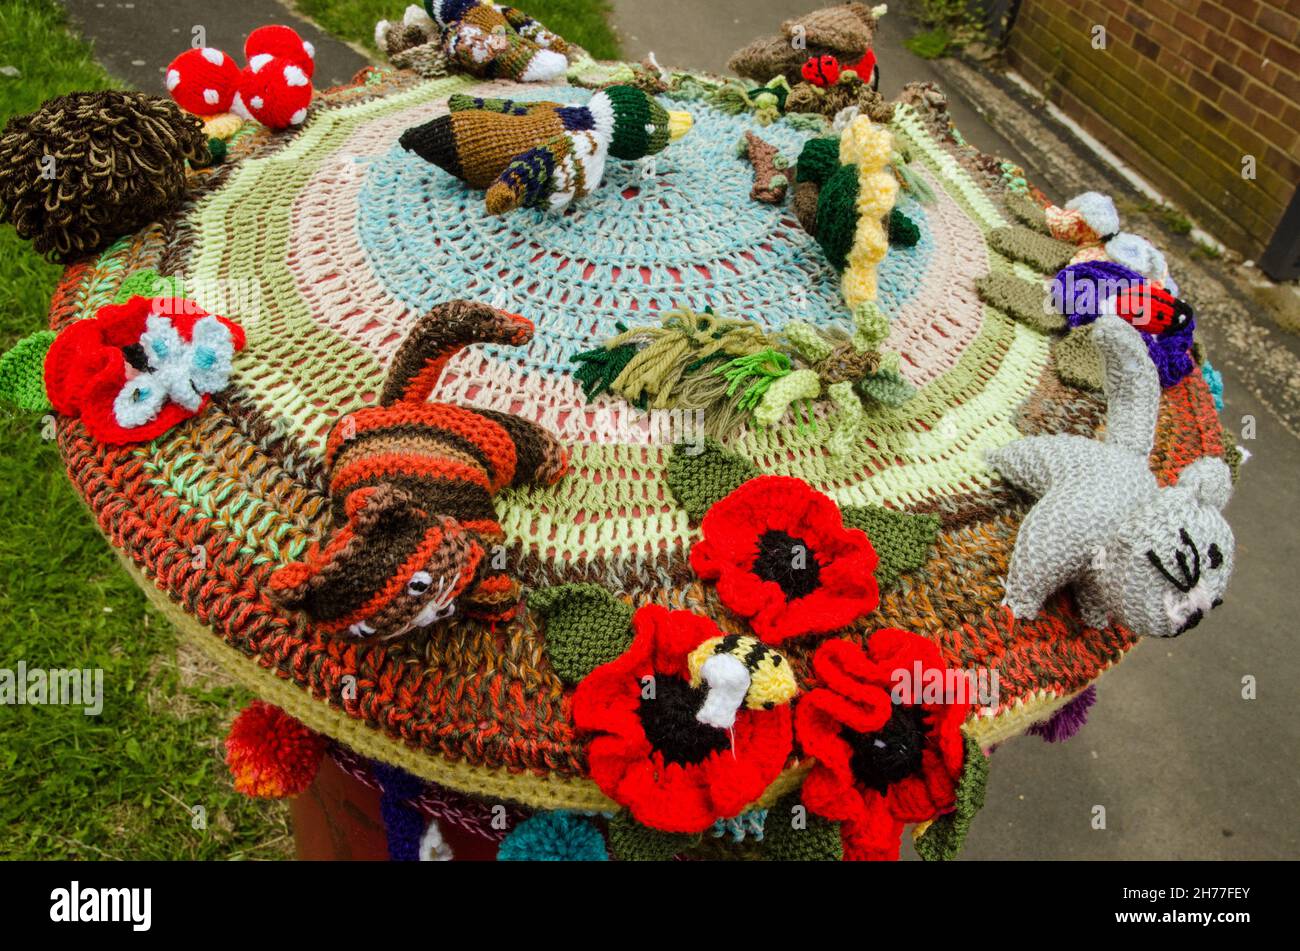 Un surmatelas en crochet sur une boîte pilier Royal Mail avec fleurs et animaux.Chaussée à Basingstoke, Hampshire. Banque D'Images